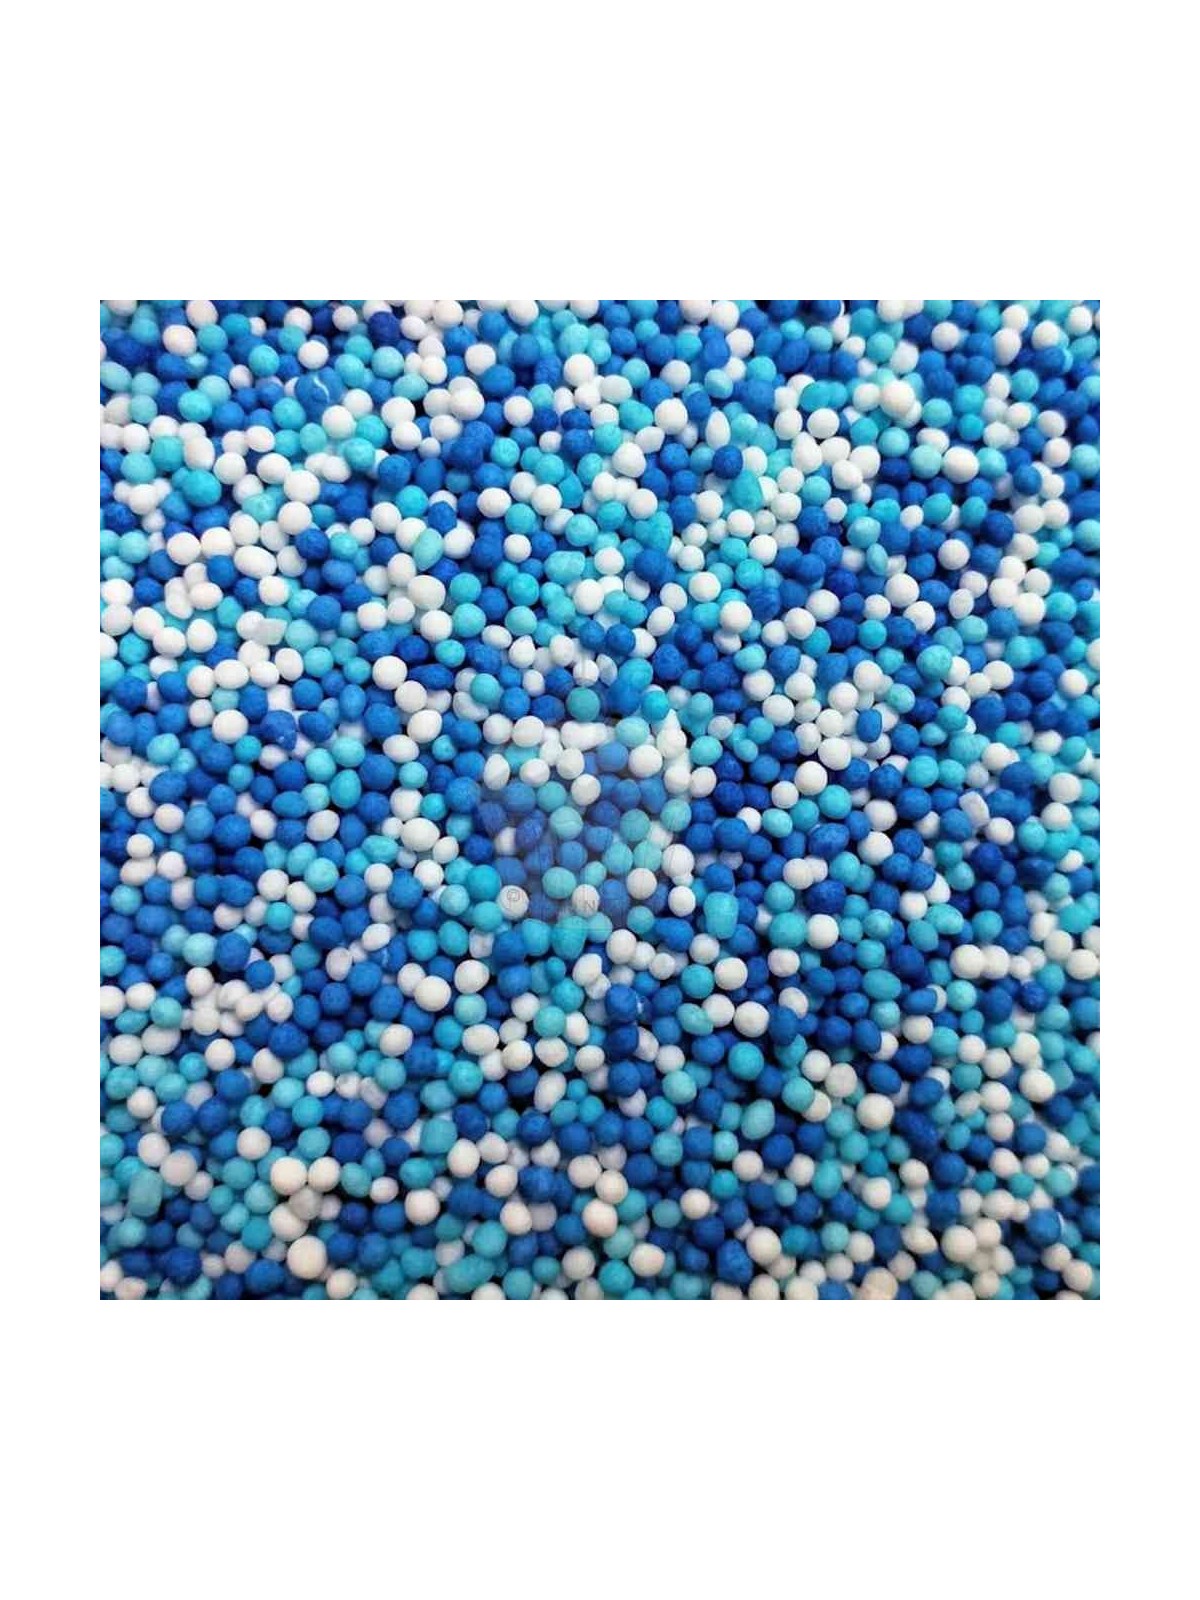 BaKery Nonpareils - white / blue / light blue  - 50g